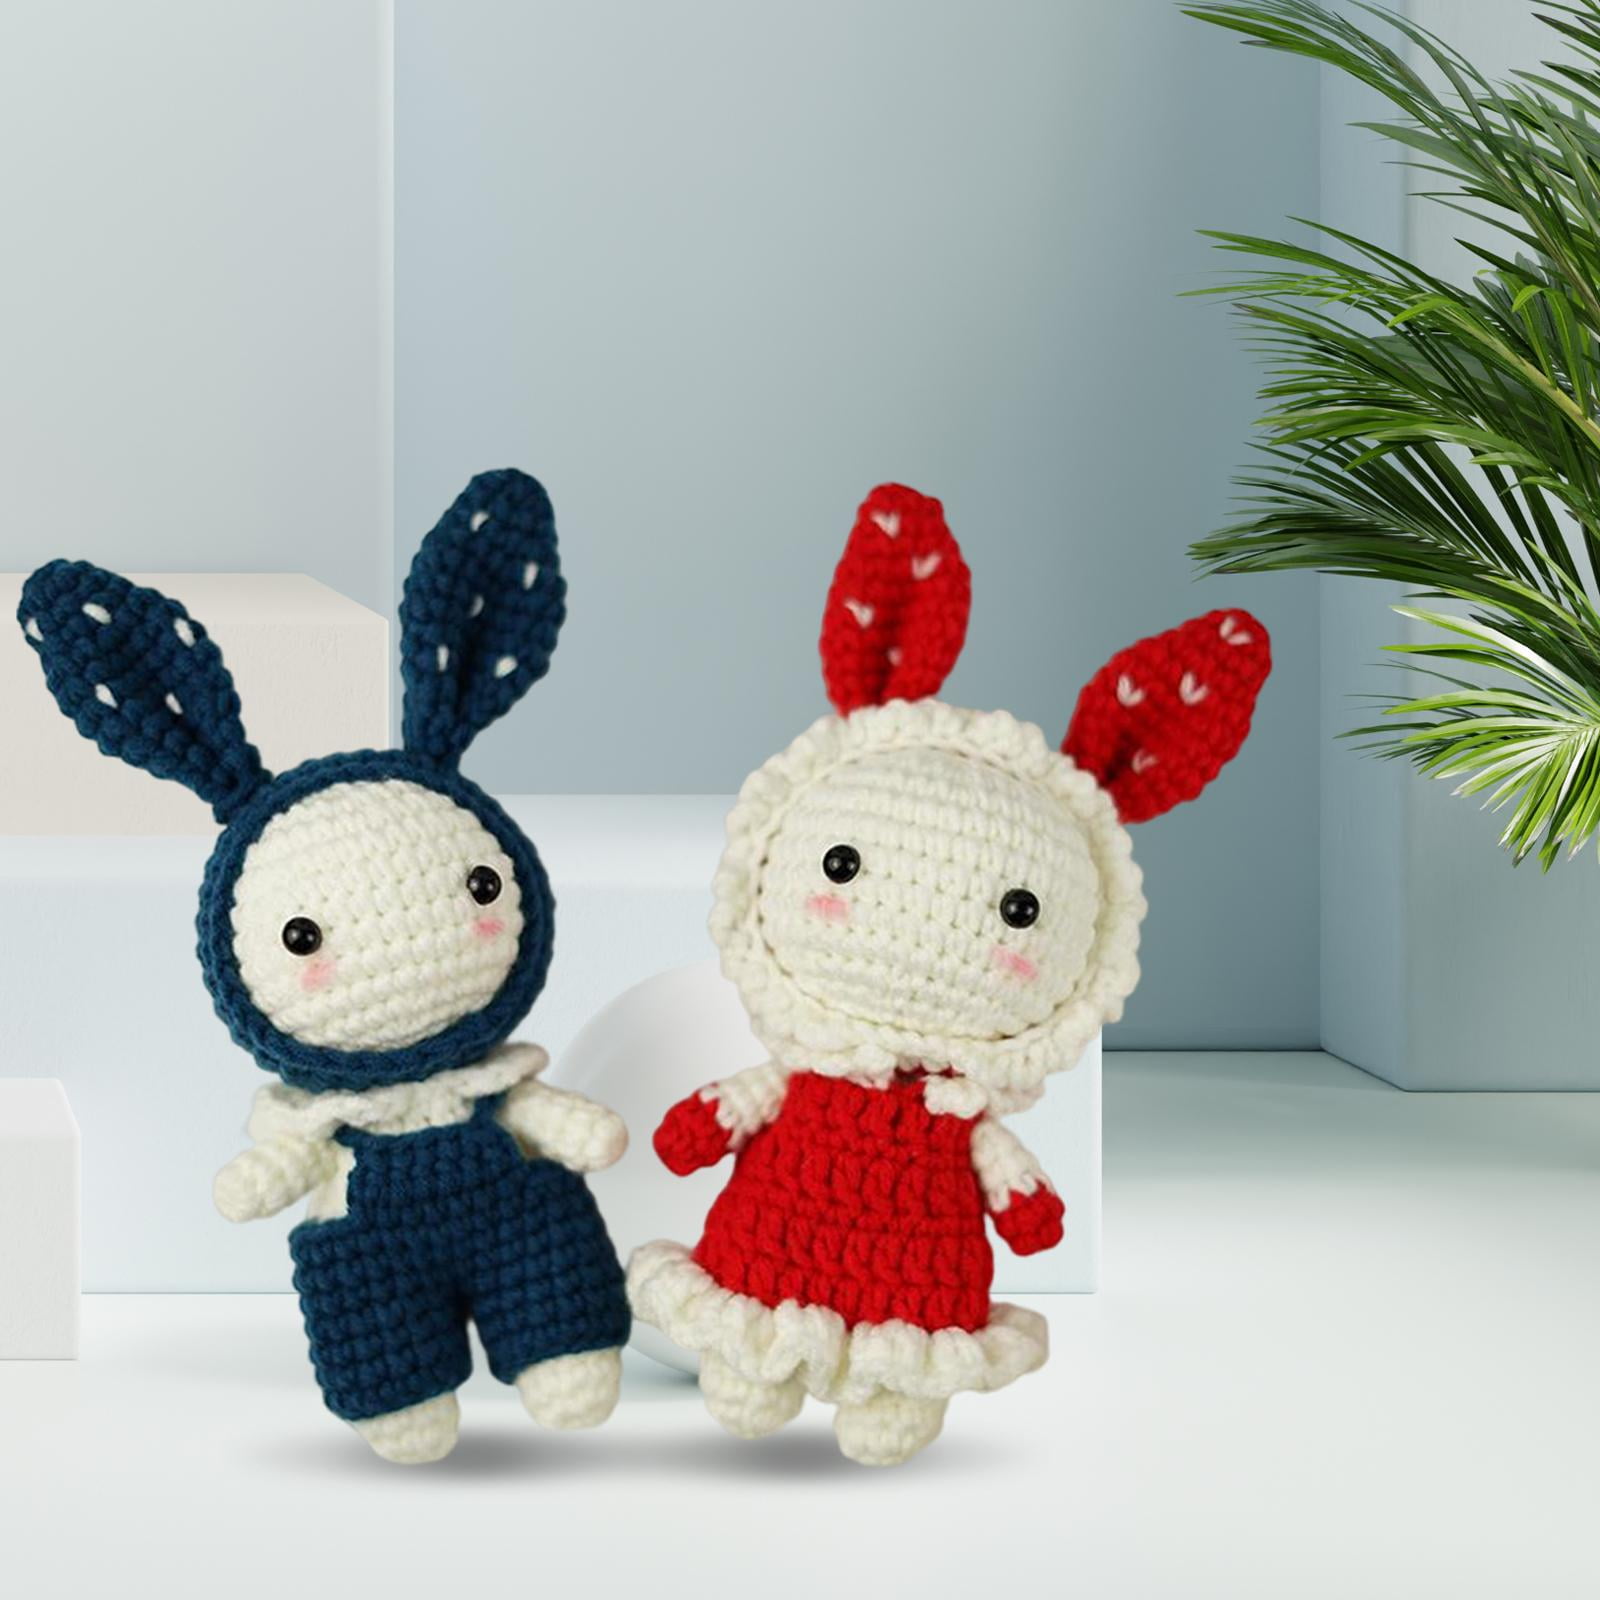 Mishi & Mashi Handmade Crochet Dolls & Book Gift Set - Mishi & Mashi